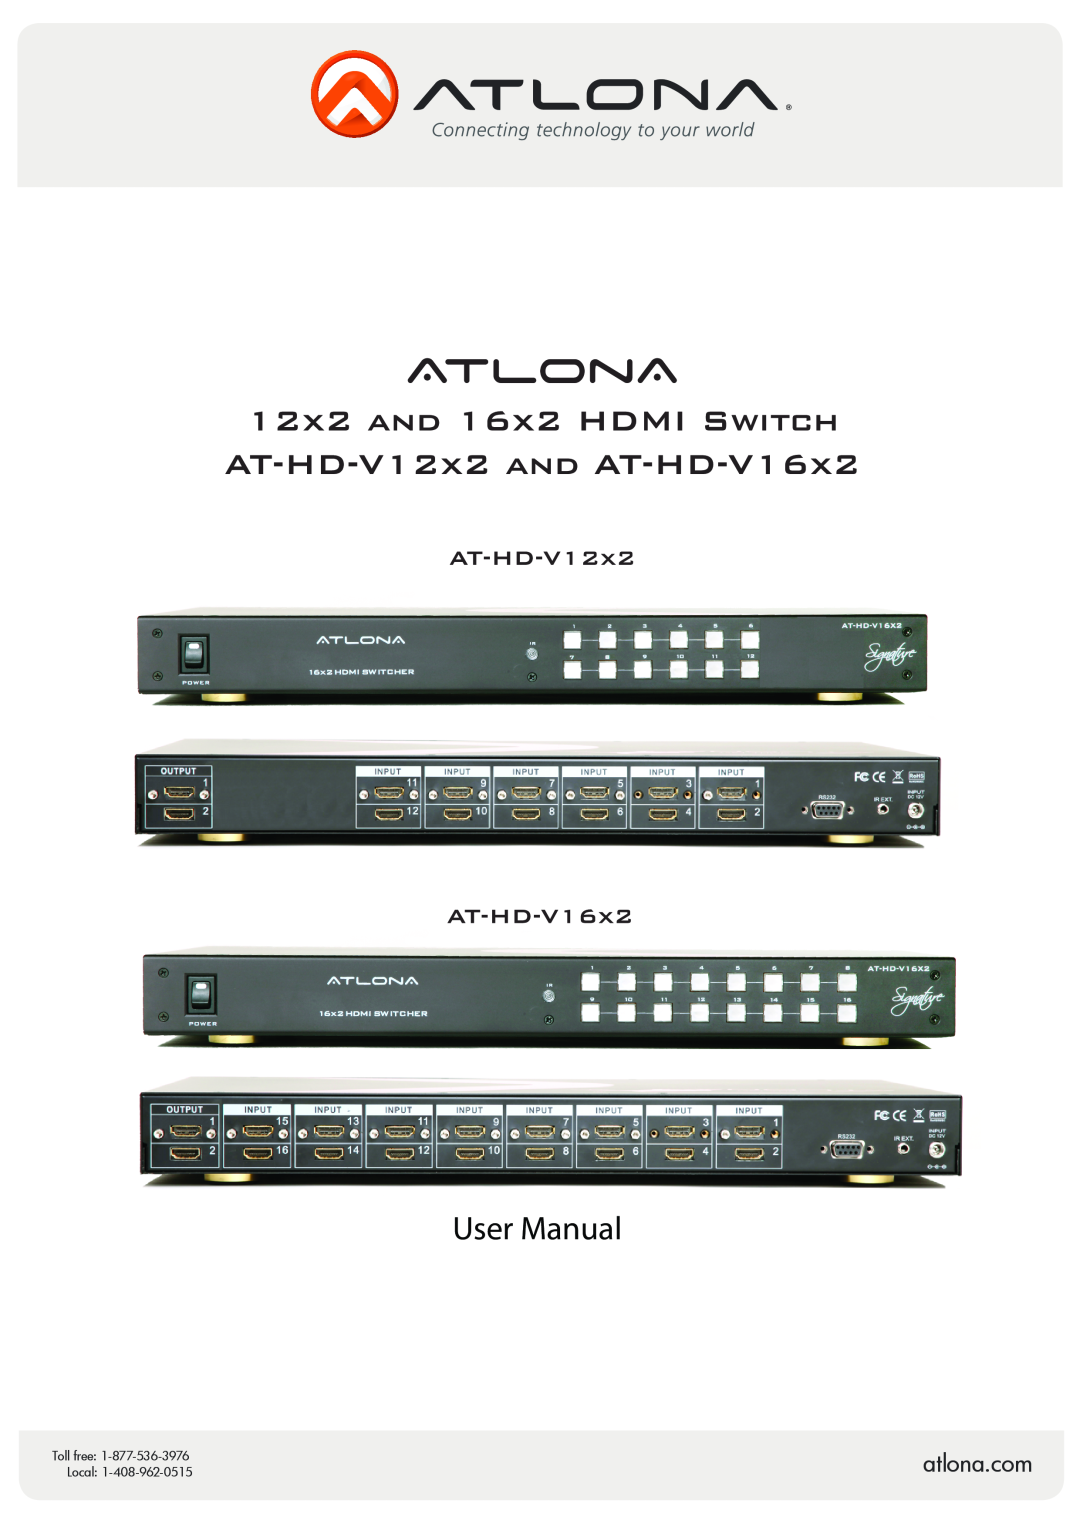 Atlona AT-HD-V12x2, AT-HD-V16x2 user manual User Manual, atlona.com, Toll free, Local 